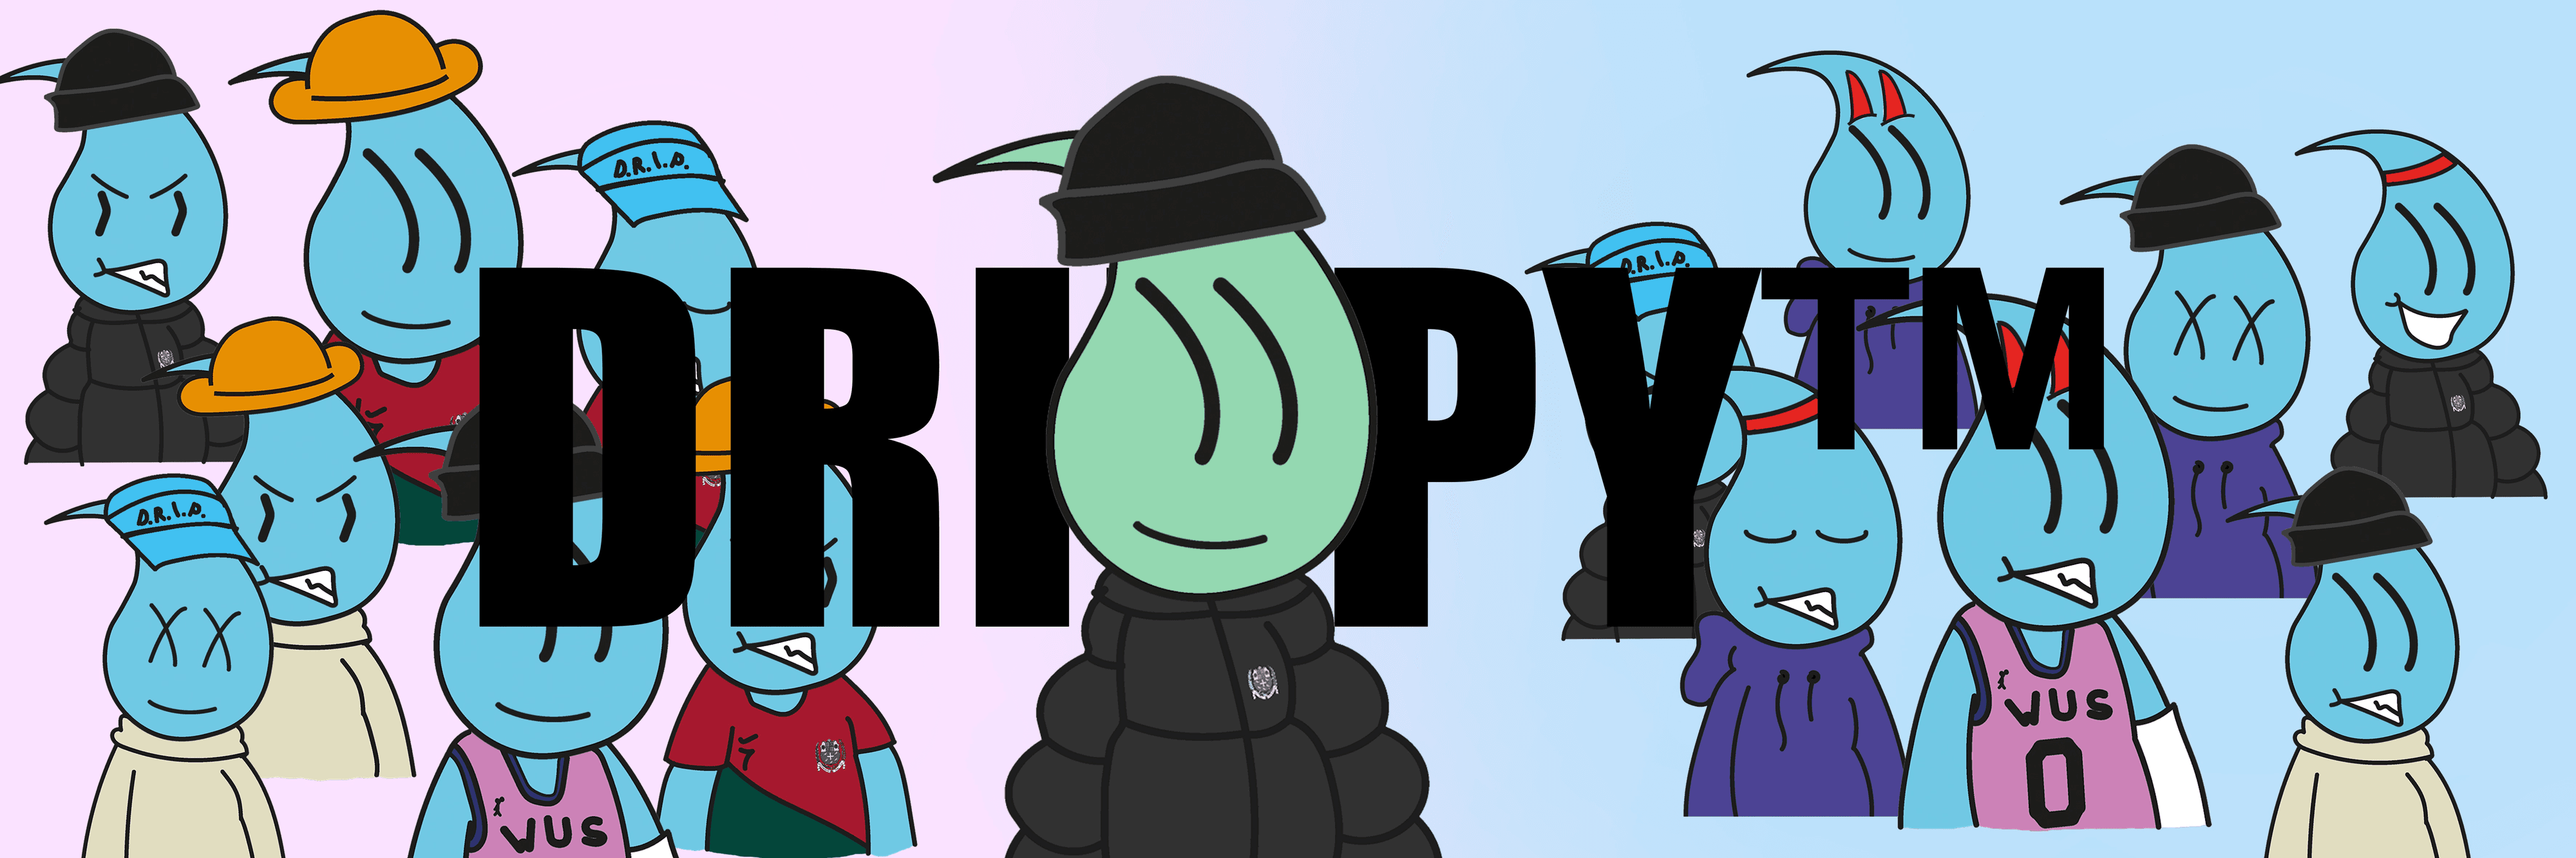 Drippy-Deployer banner